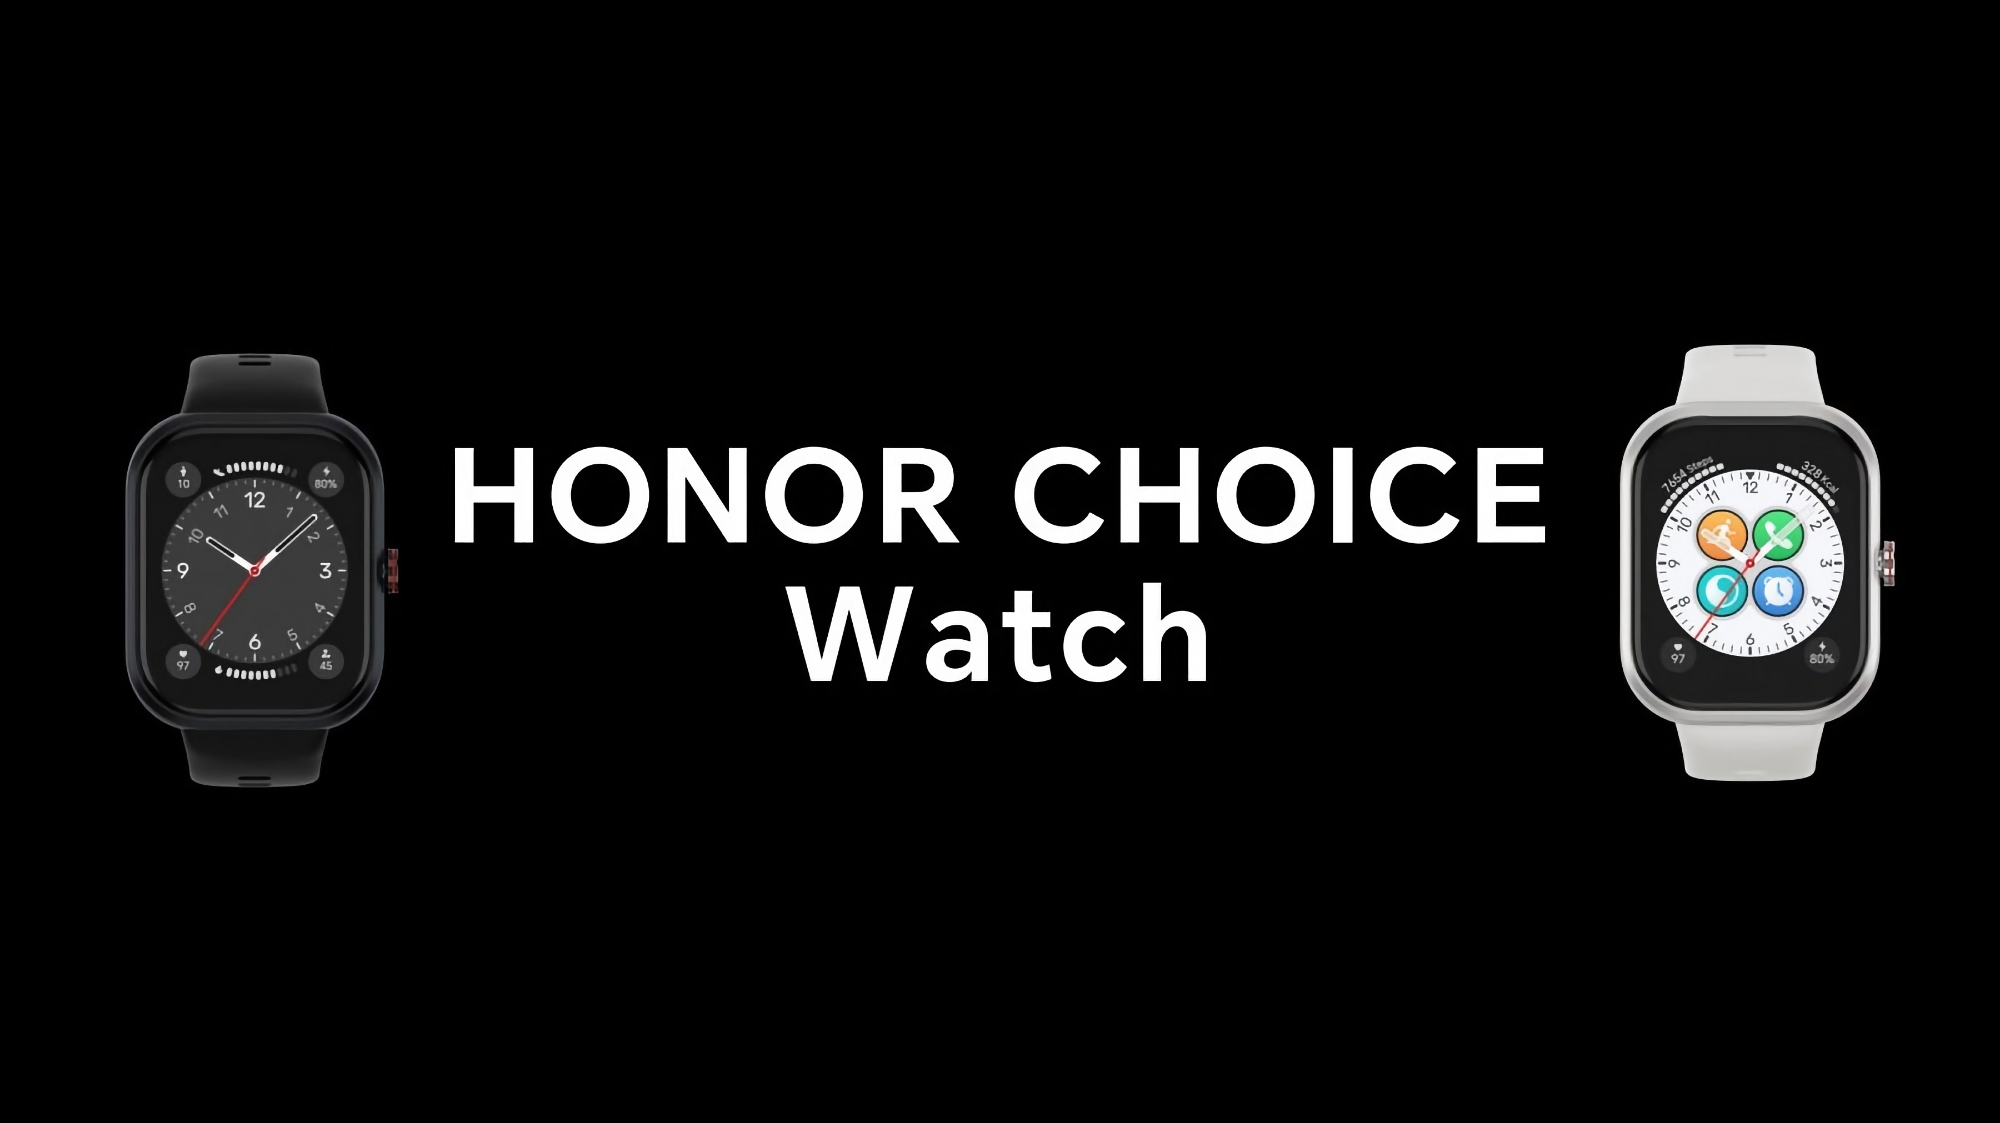 Honor Choice Watch: et smartwatch med en 1,95" AMOLED-skærm, SpO2-sensor, opkaldsunderstøttelse og op til 12 dages batterilevetid til 78 dollars.